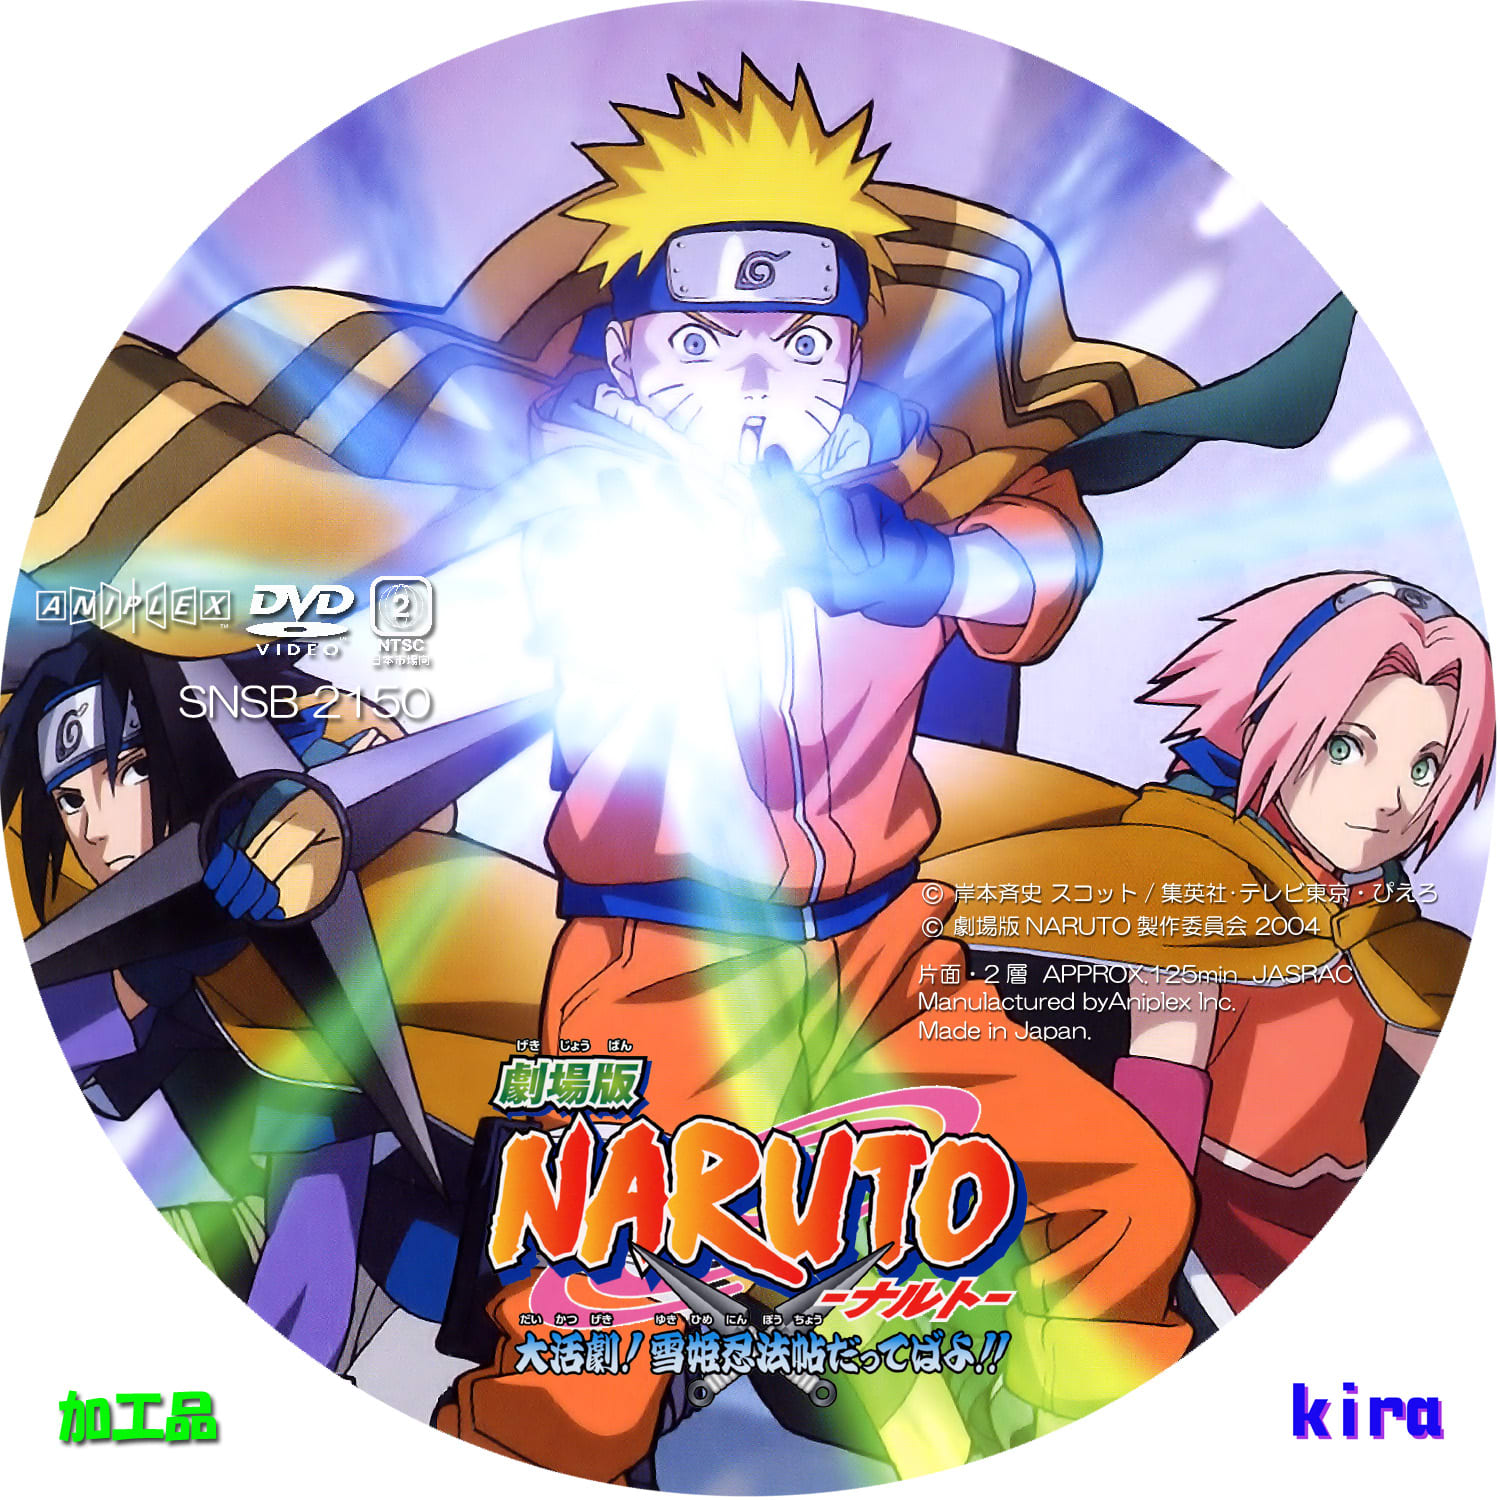 劇場版 Naruto ナルト 疾風伝 絆 完全生産限定版 アニプレックス 最安値 篠田カリモクのブログ